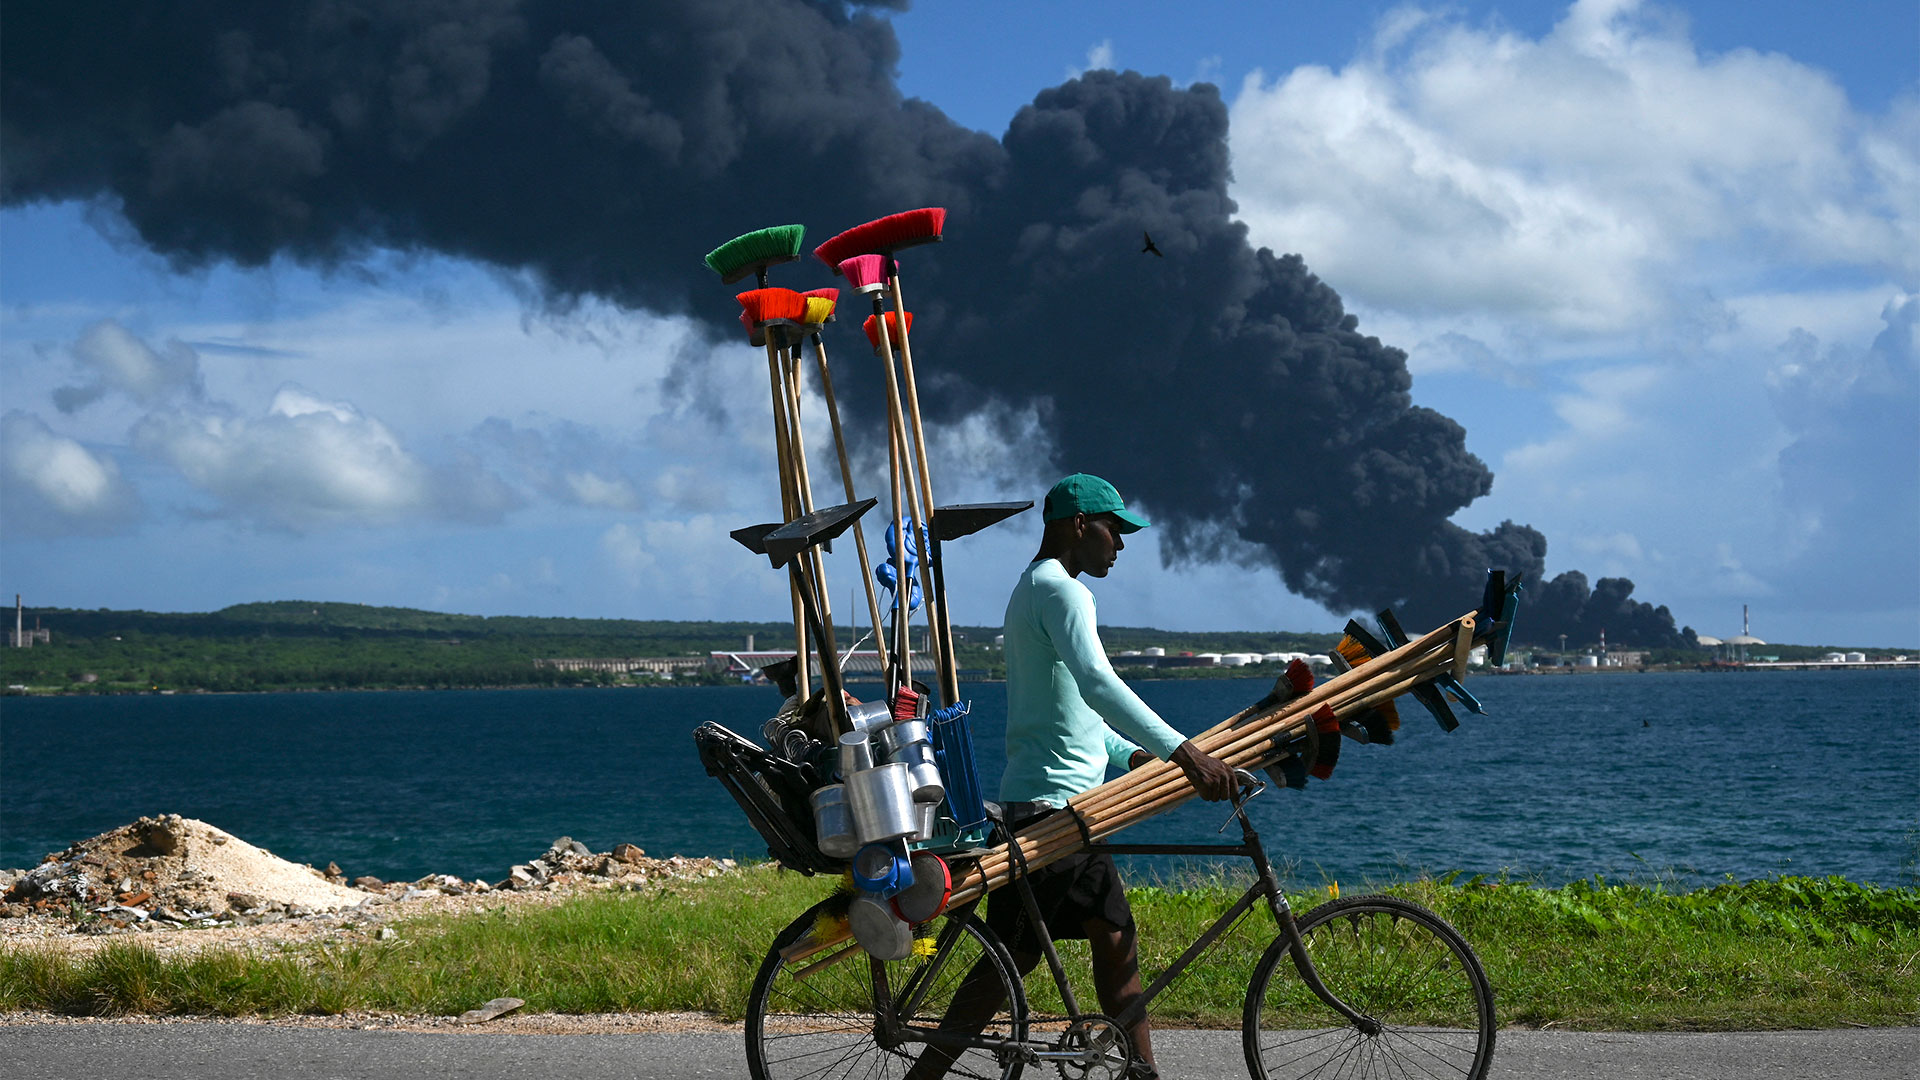 El incendio se produce en momentos en que la isla enfrenta desde mayo pasado dificultades de generación de energía (YAMIL LAGE / AFP)